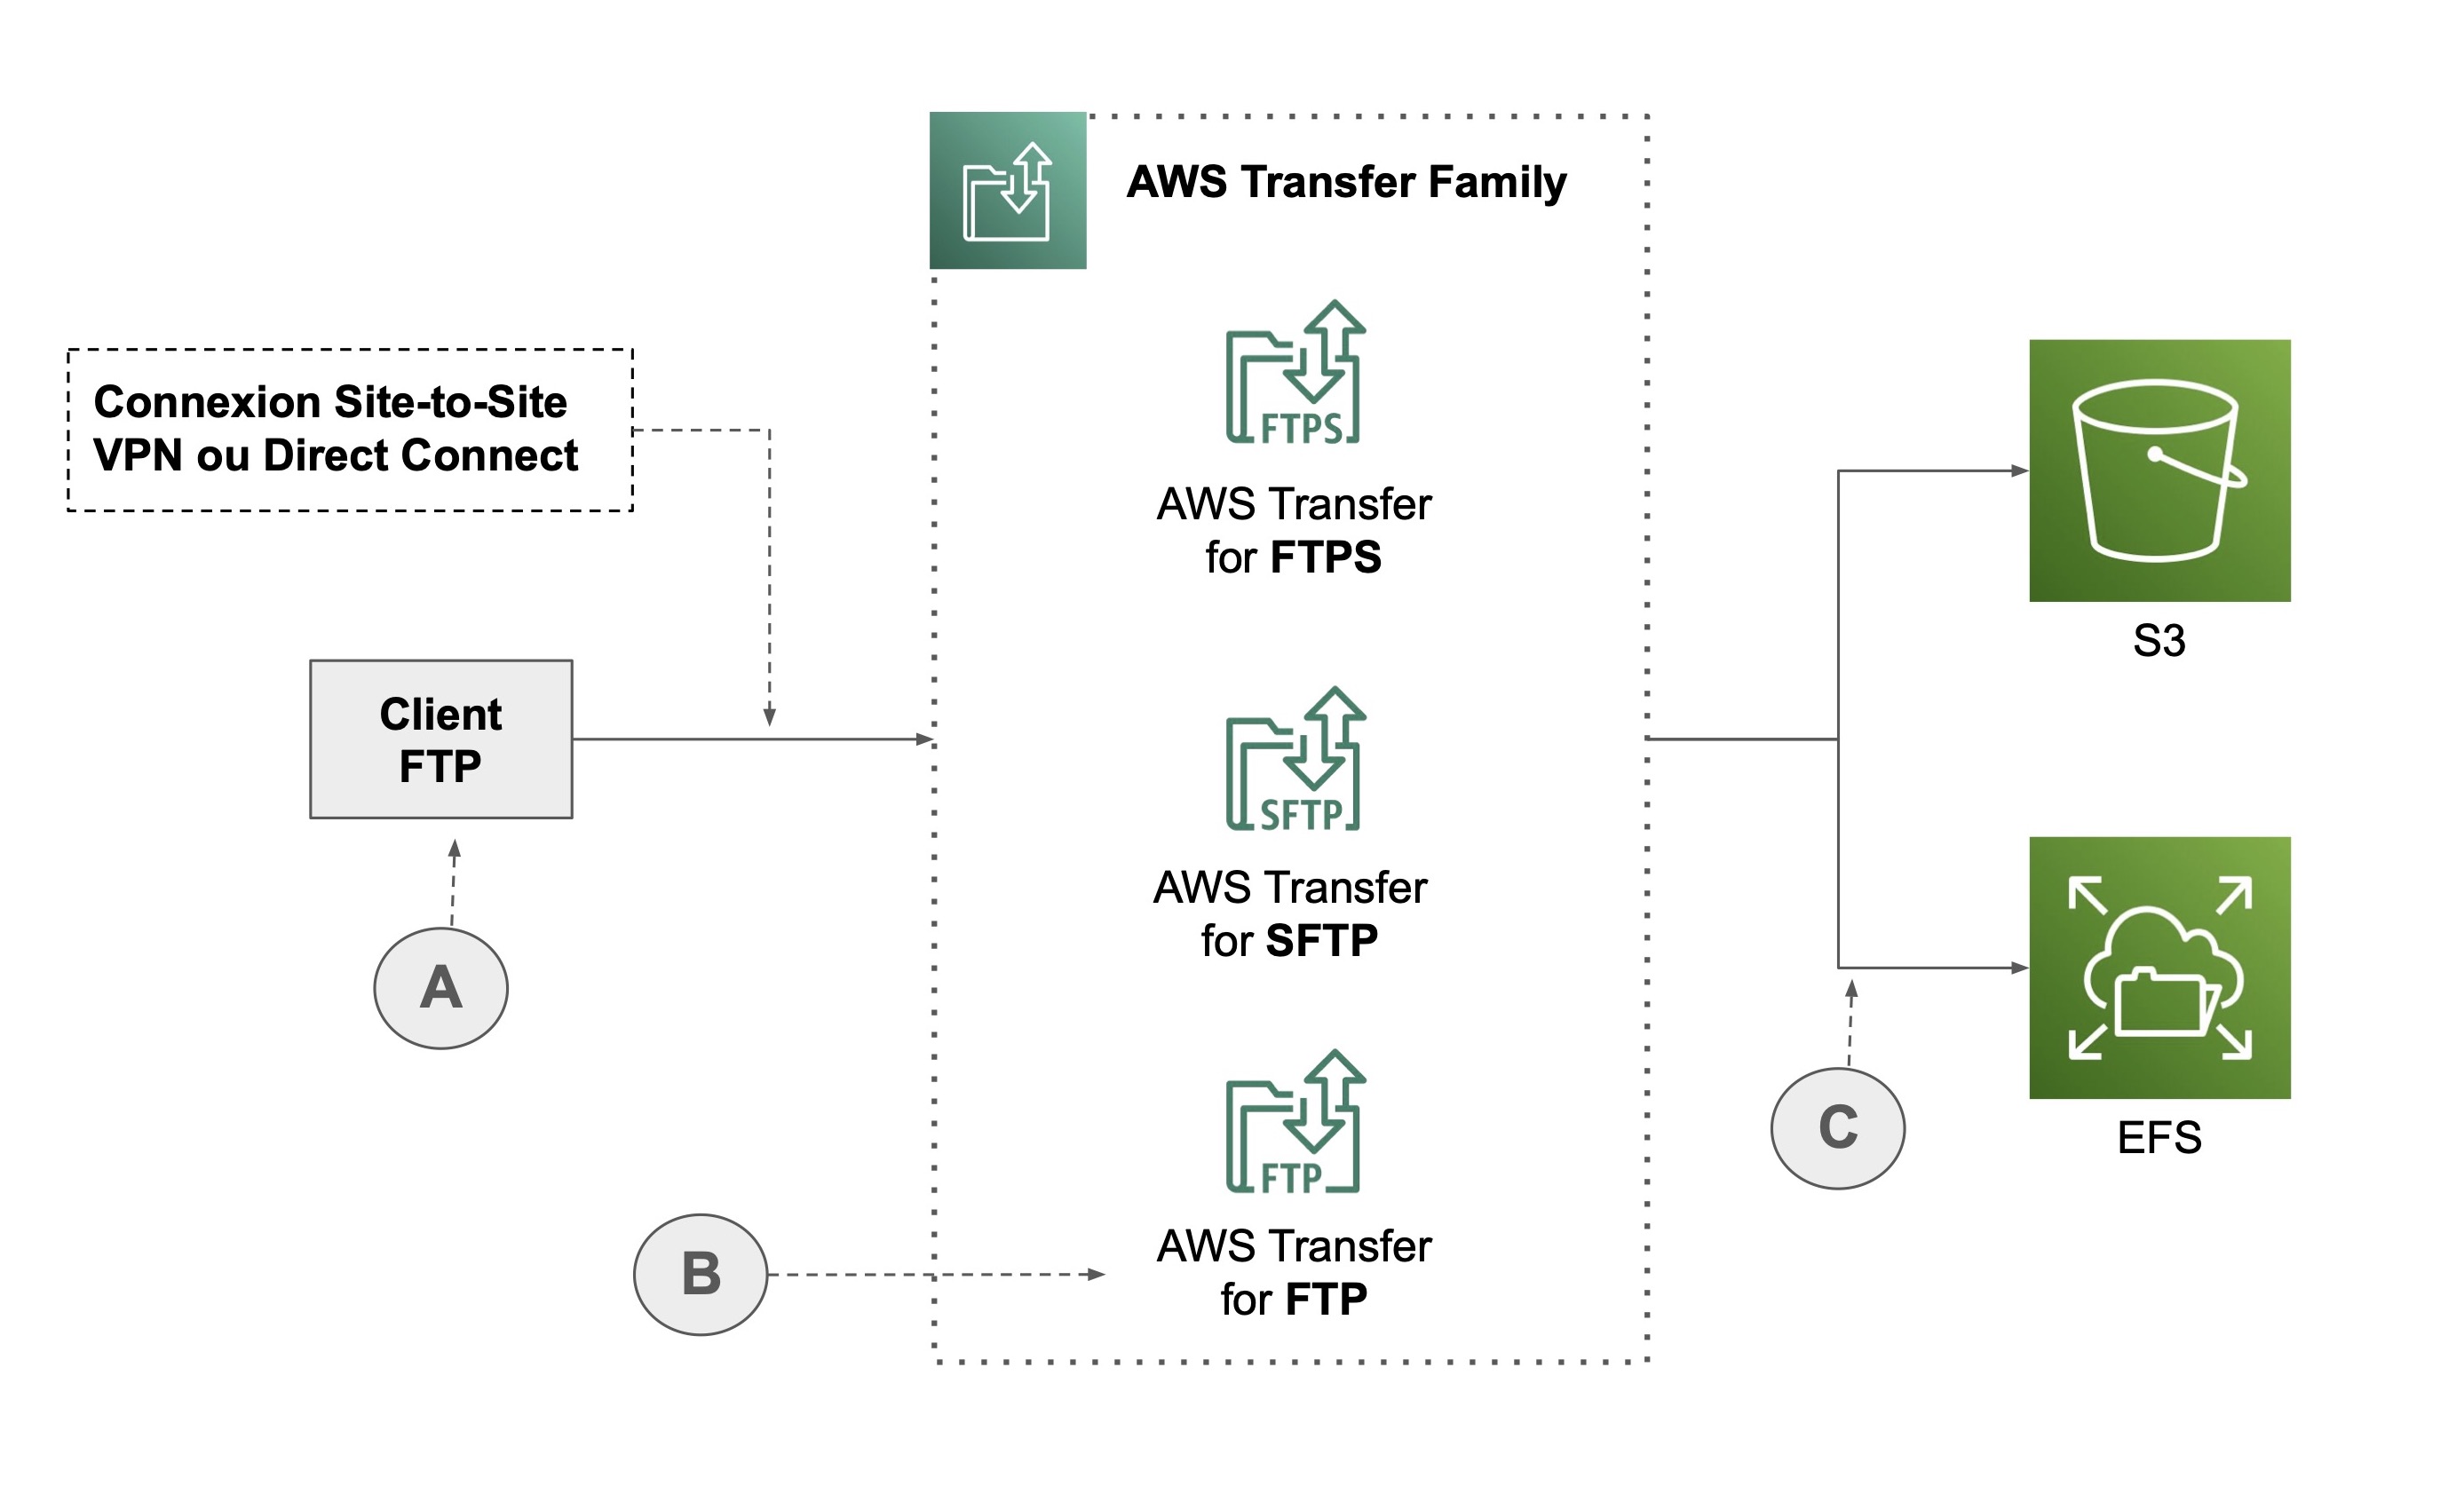 Un chemin mène du Client FTP (A) vers AWS Transfer Family (AWS Transfer for FTPS, SFTP et FTP (B)), puis individuellement vers S3 et EFS (C)